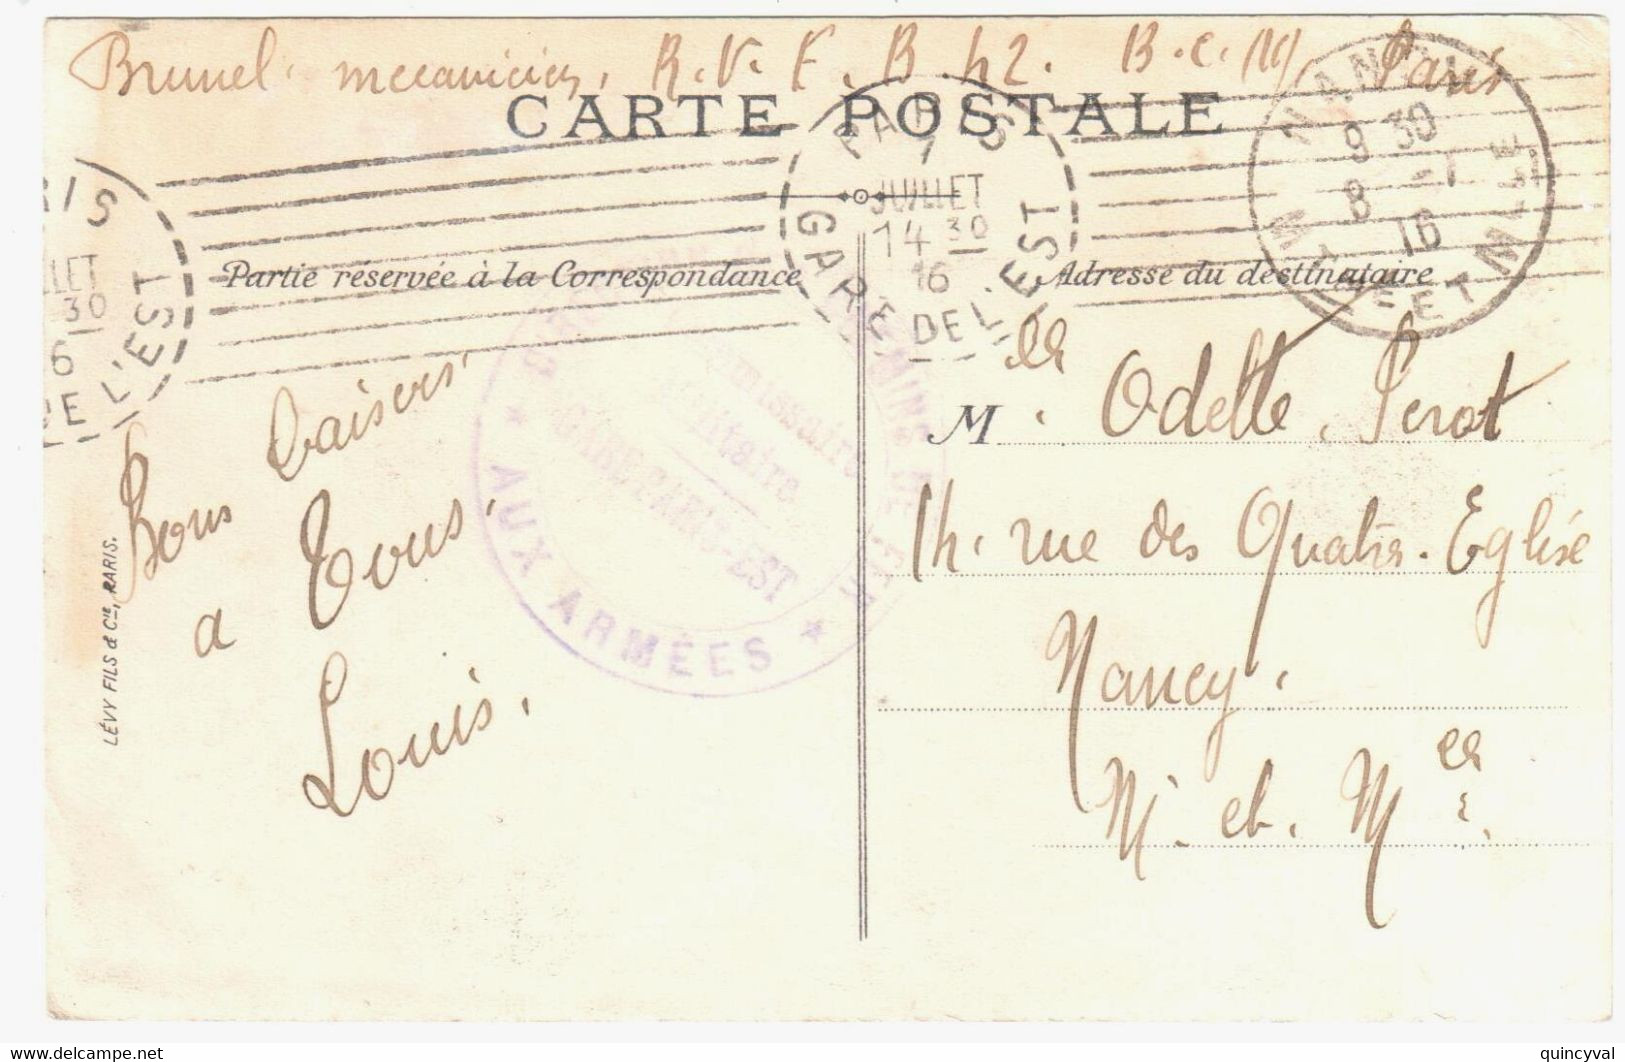 PARIS GARE DE L'EST Carte Postale En Franchise Militaire Ob 7 7 1916 Dest Nancy Ob Méca Krag 7 Lignes Inégales C2101 - Mechanische Stempels (varia)